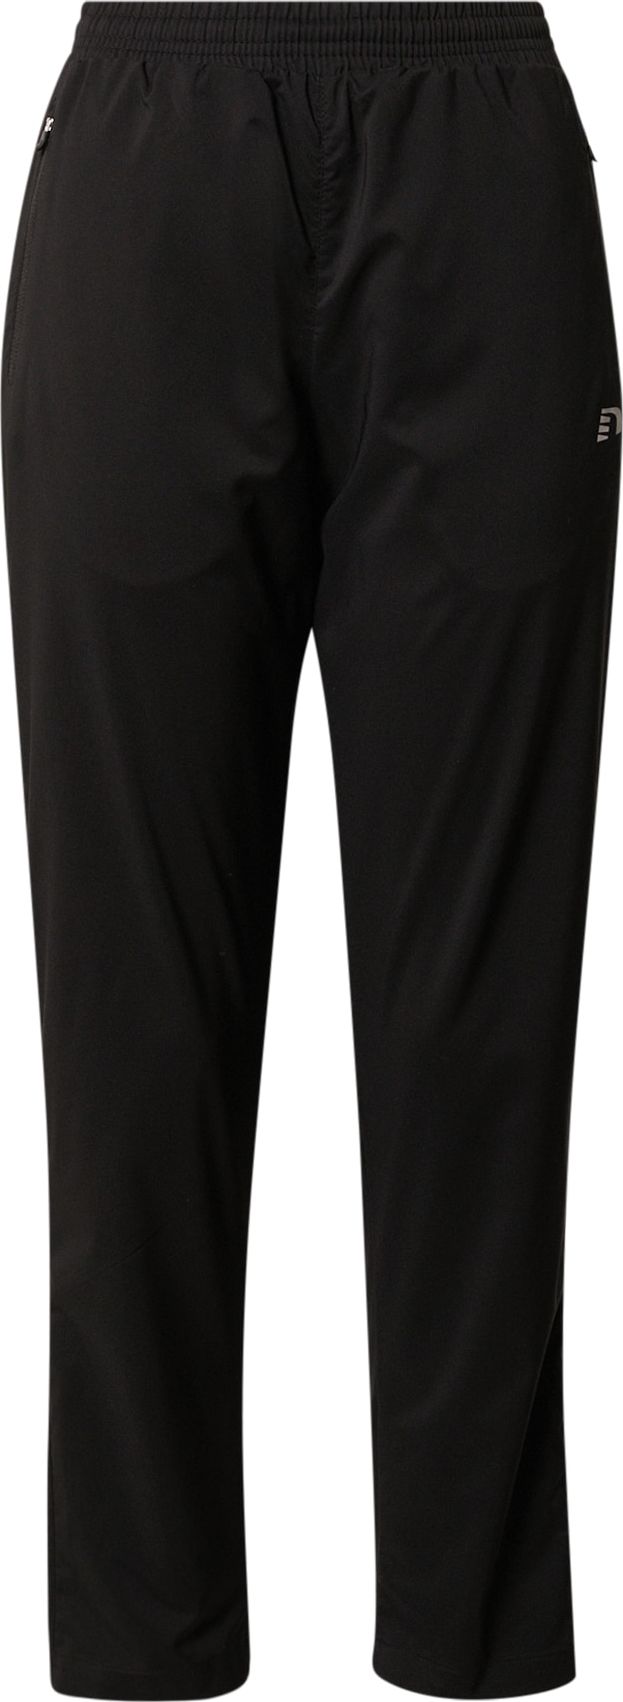 Sportovní kalhoty NEWLINE černá / bílá